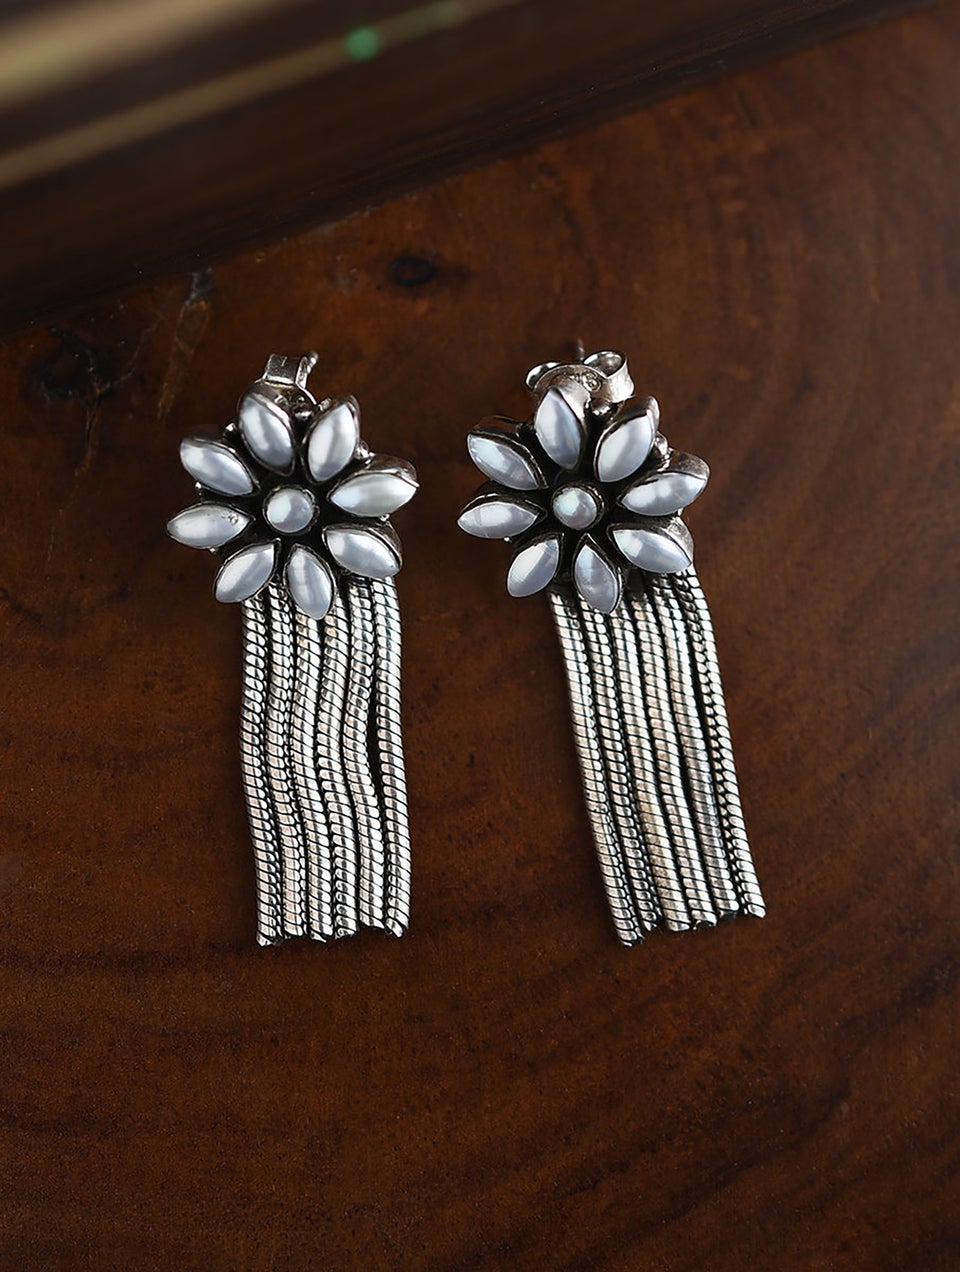 Women Tribal Silver Earrings with Pearls